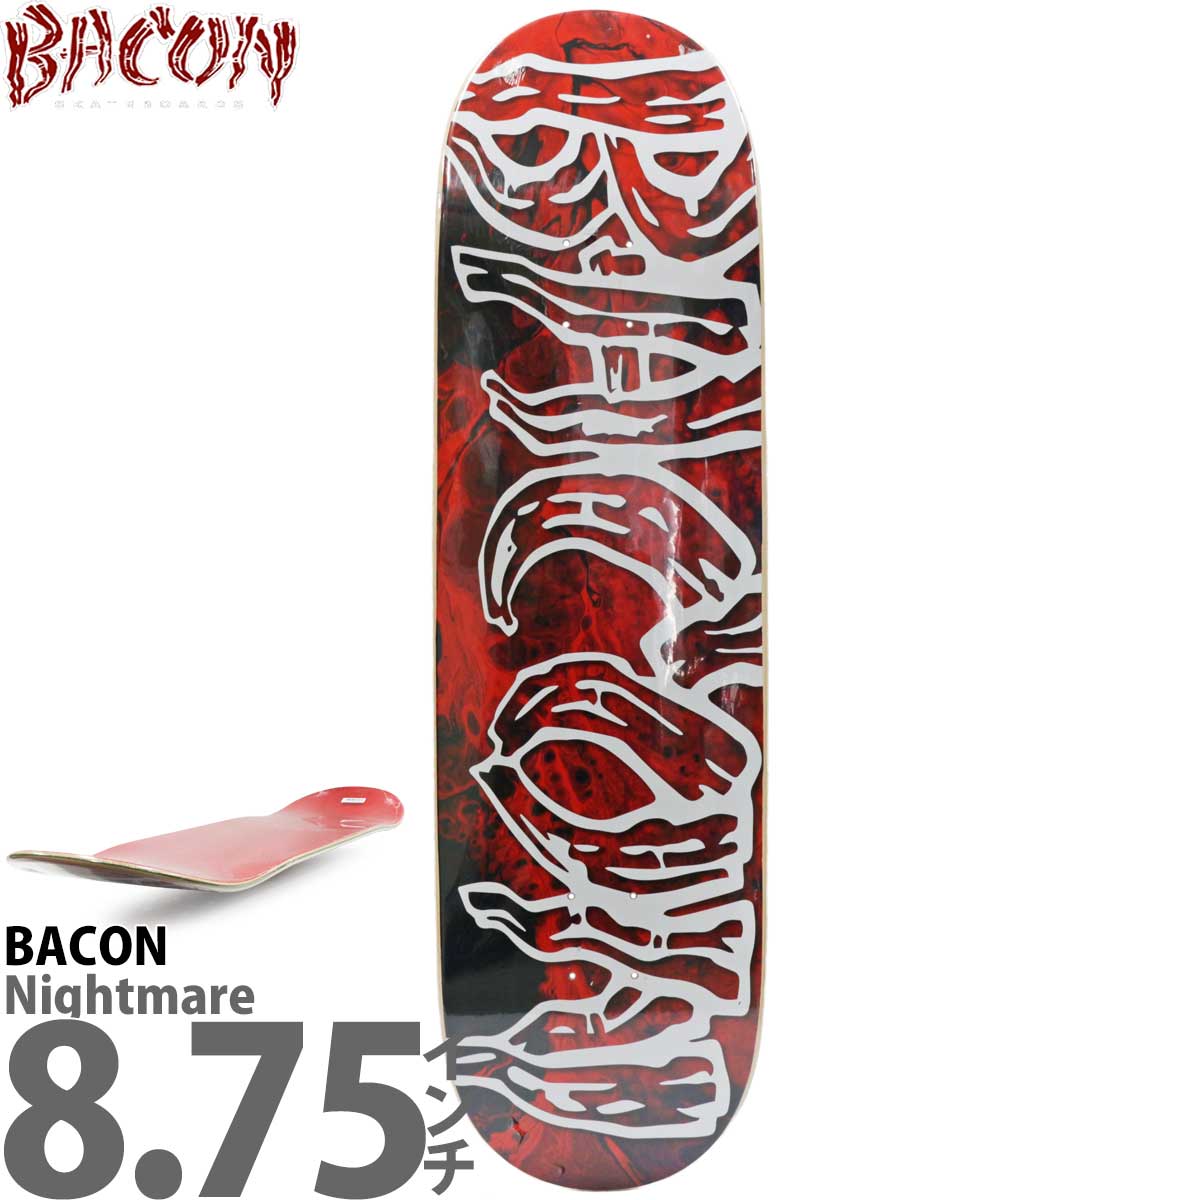 x[R 8.75C` XP{[ fbL Bacon Skateboards Nightmare On Front Street Graphic Deck XP[g{[h iCgA[ A[oX|[c Xg[g p[N v v[ n[hRAuh JbgobN XP{[fbL 